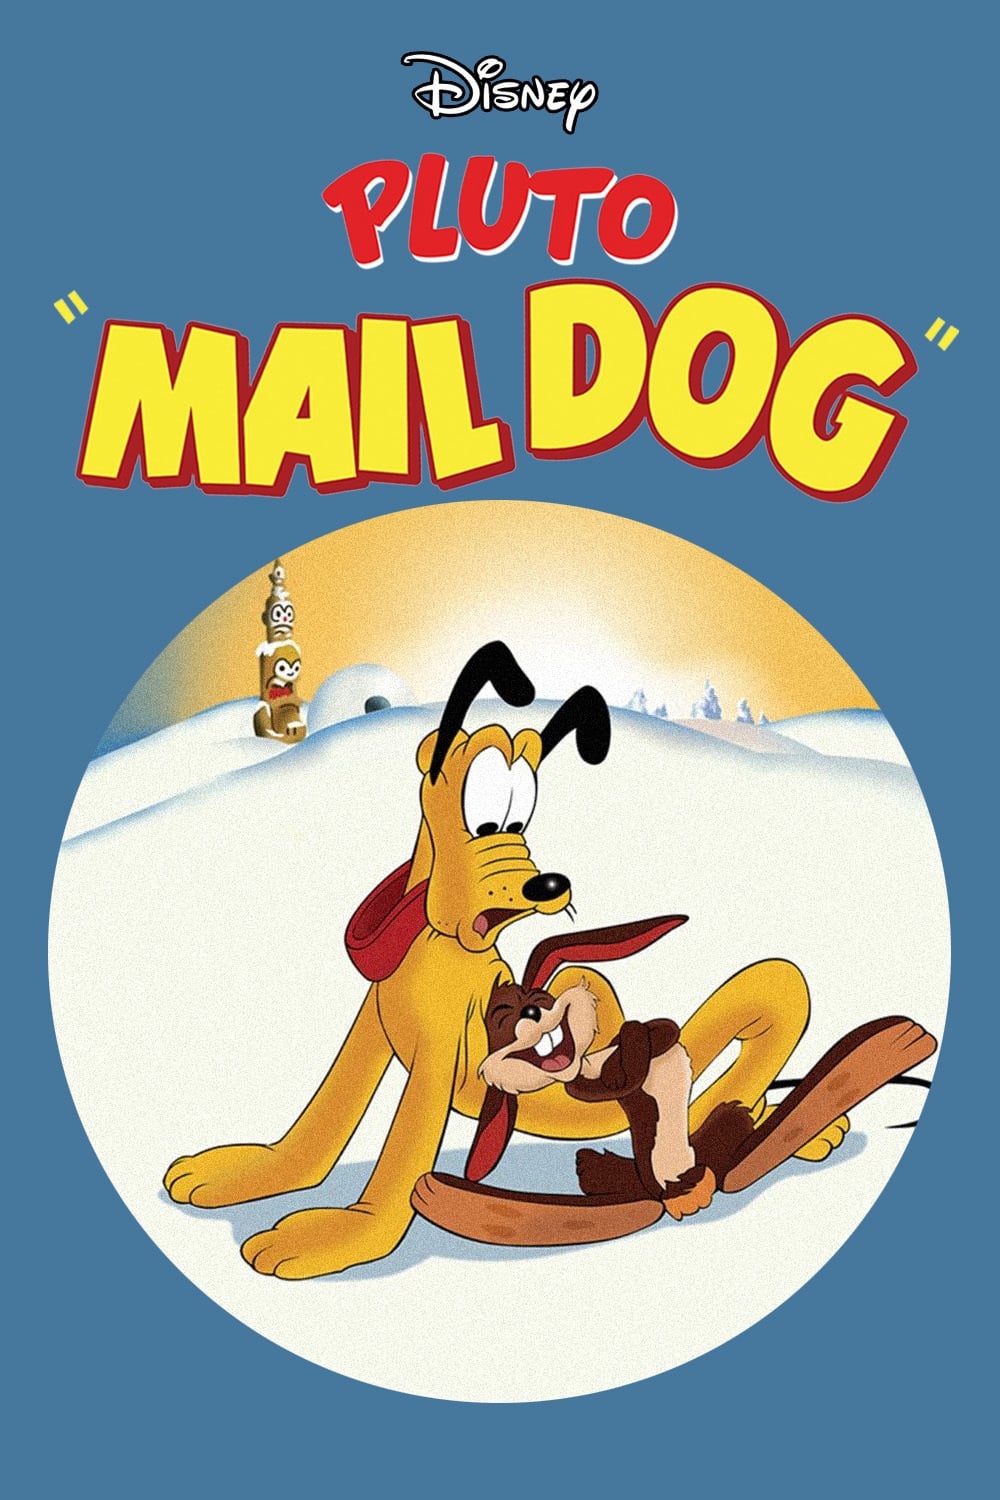 Mail Dog (1947)